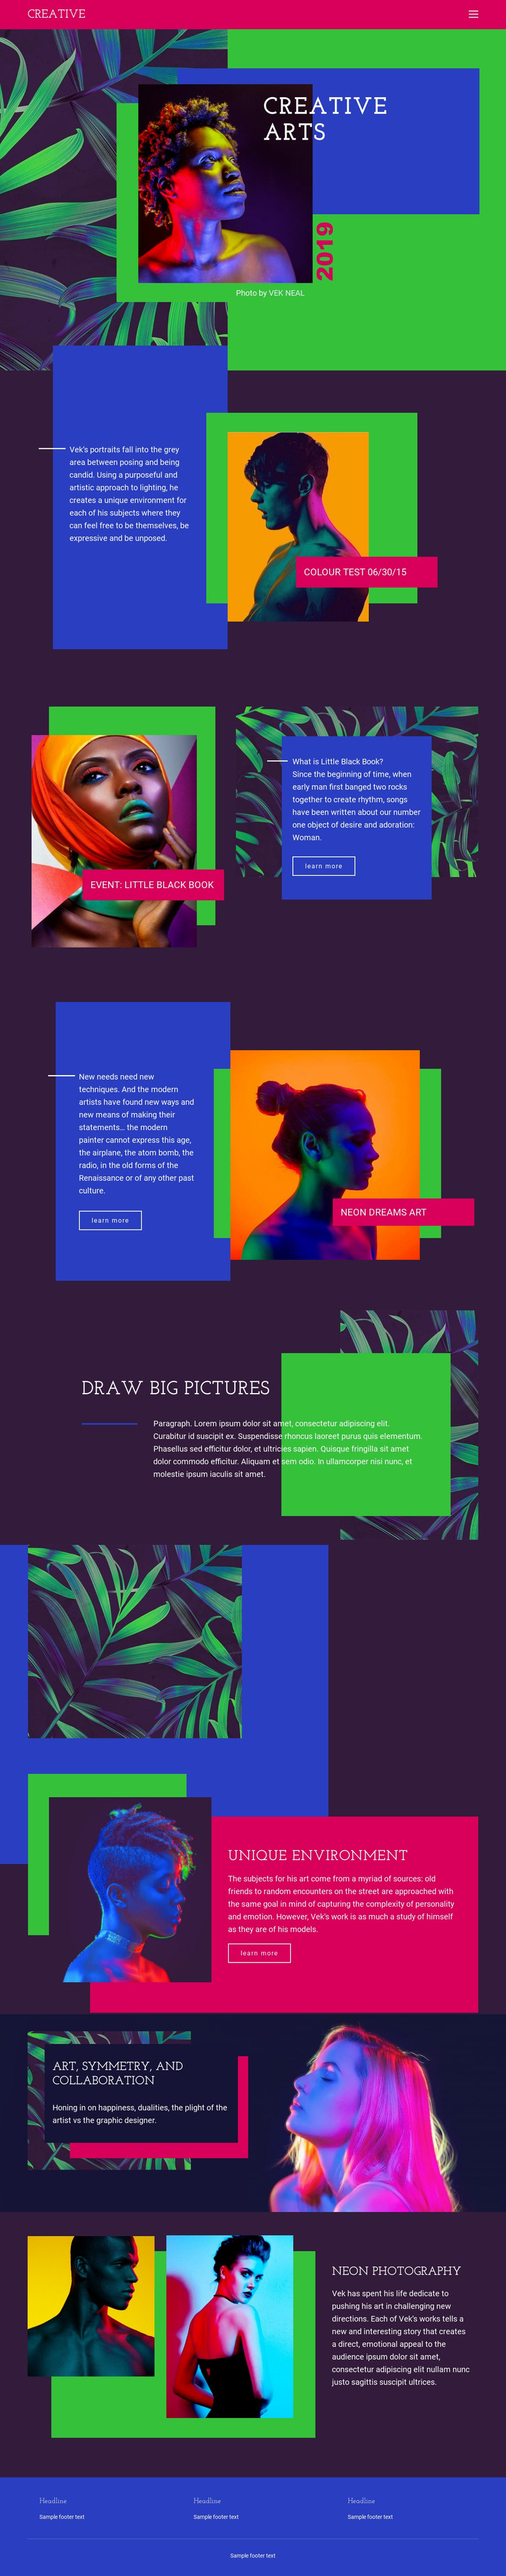 Creative Art Ideas Web Design